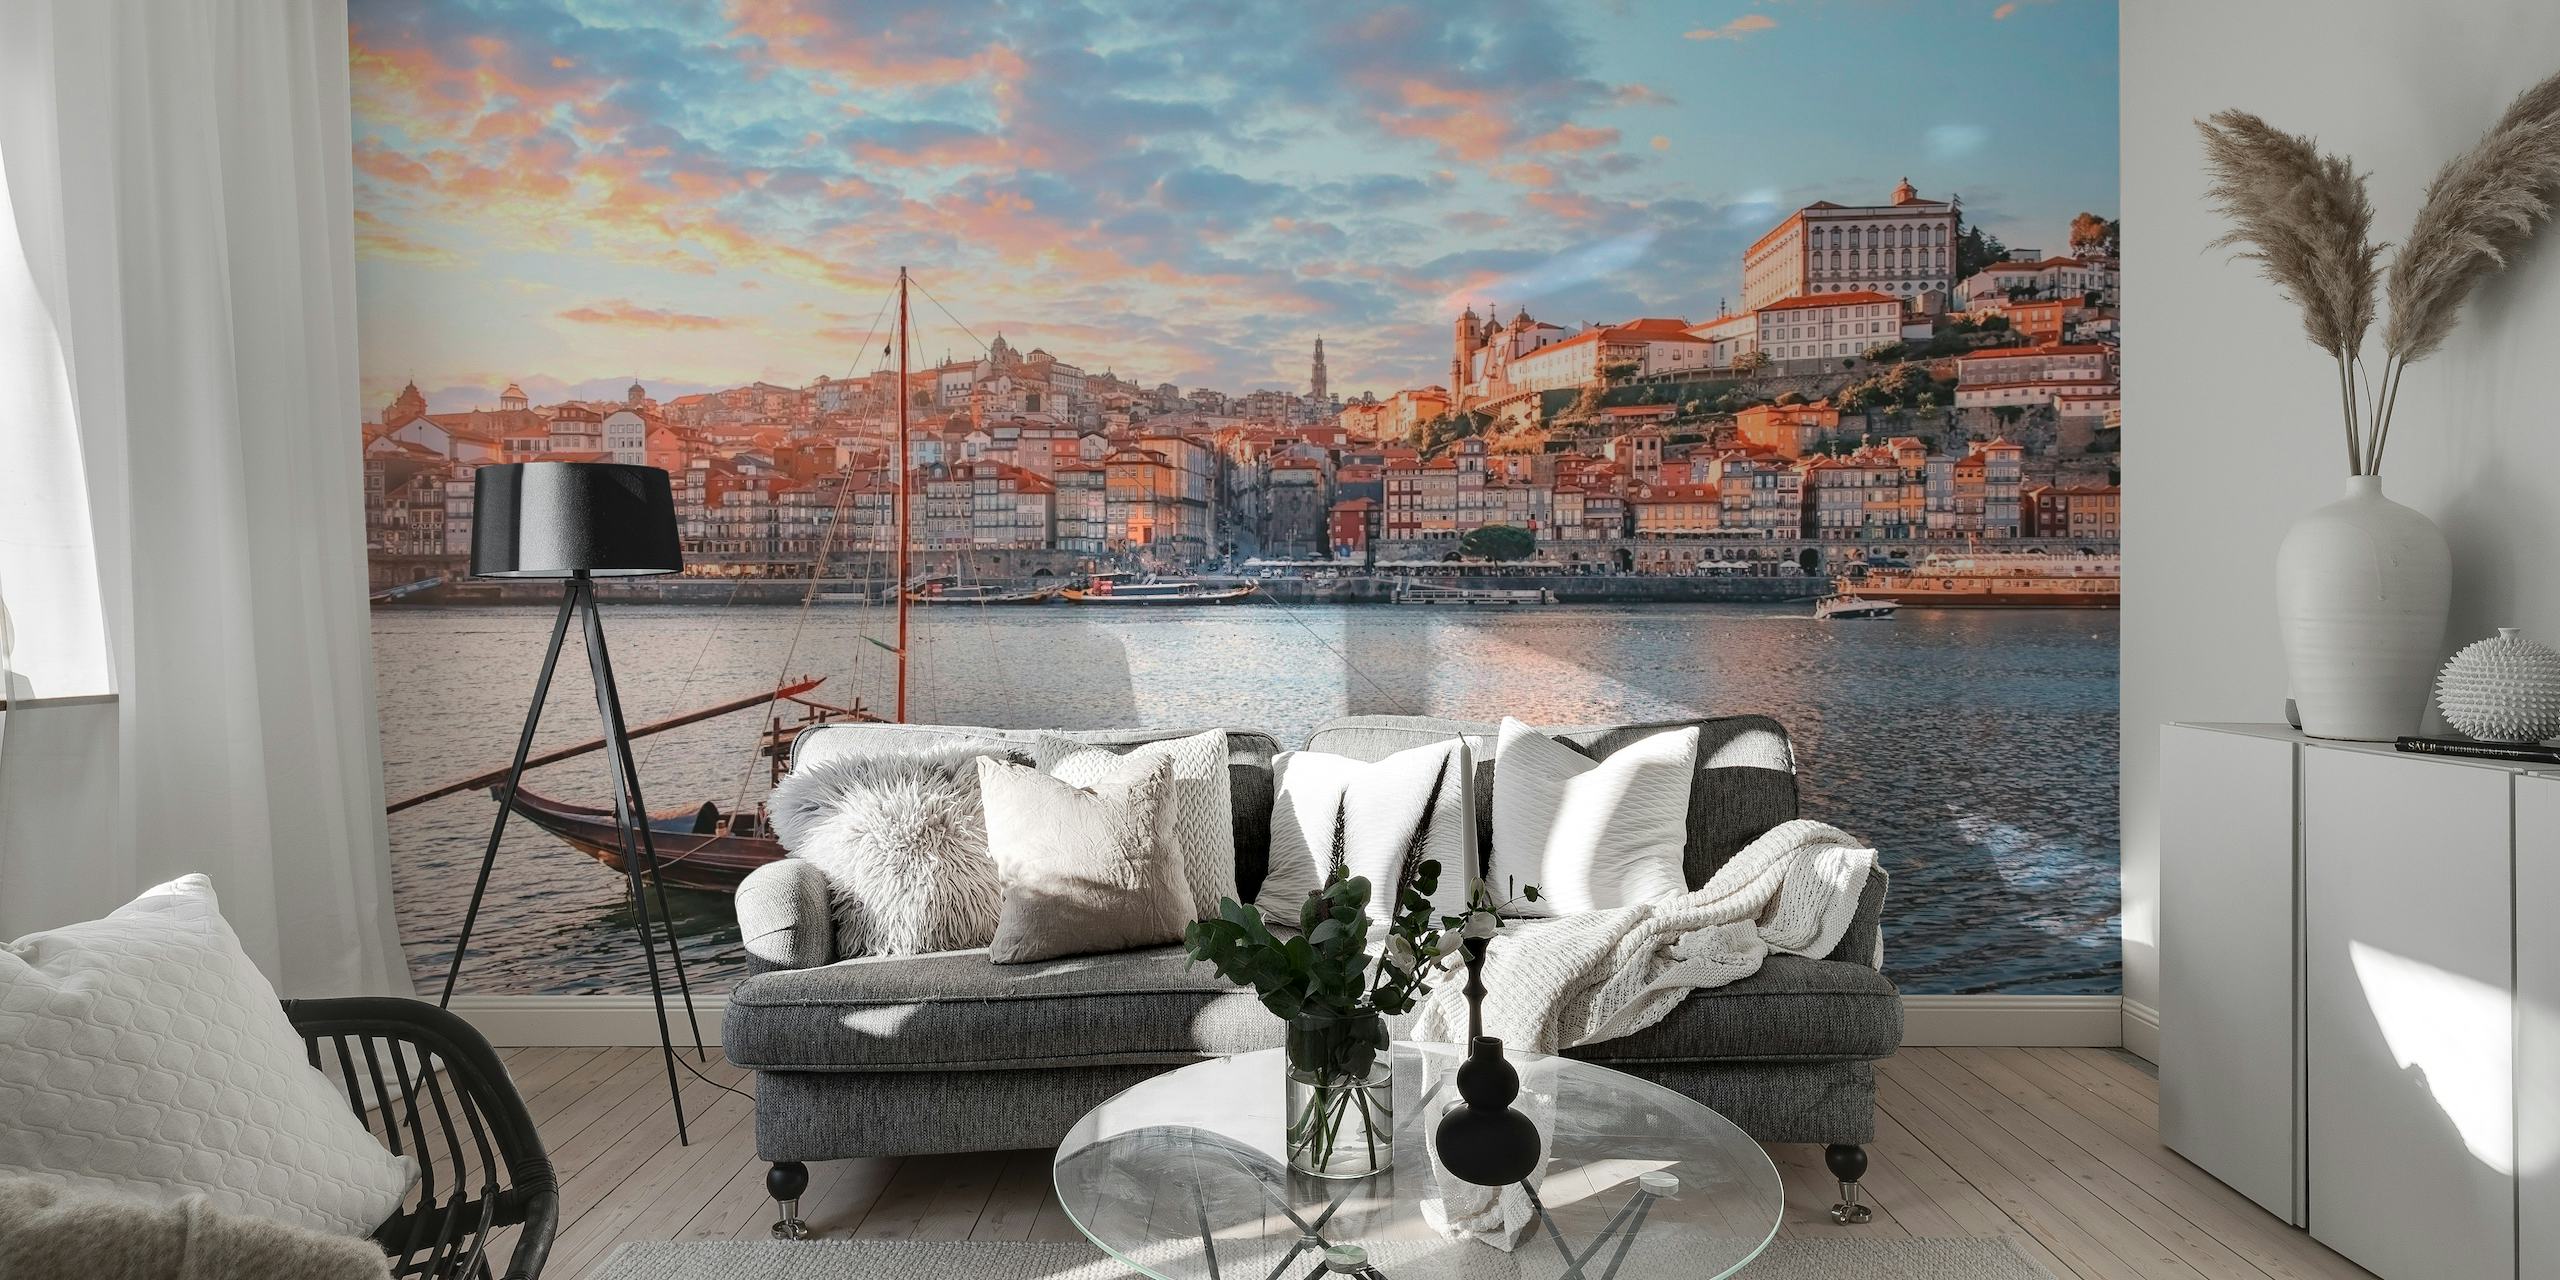 Fototapet av Portos stadsbild i solnedgången med terrakottatak och en traditionell båt på floden Douro